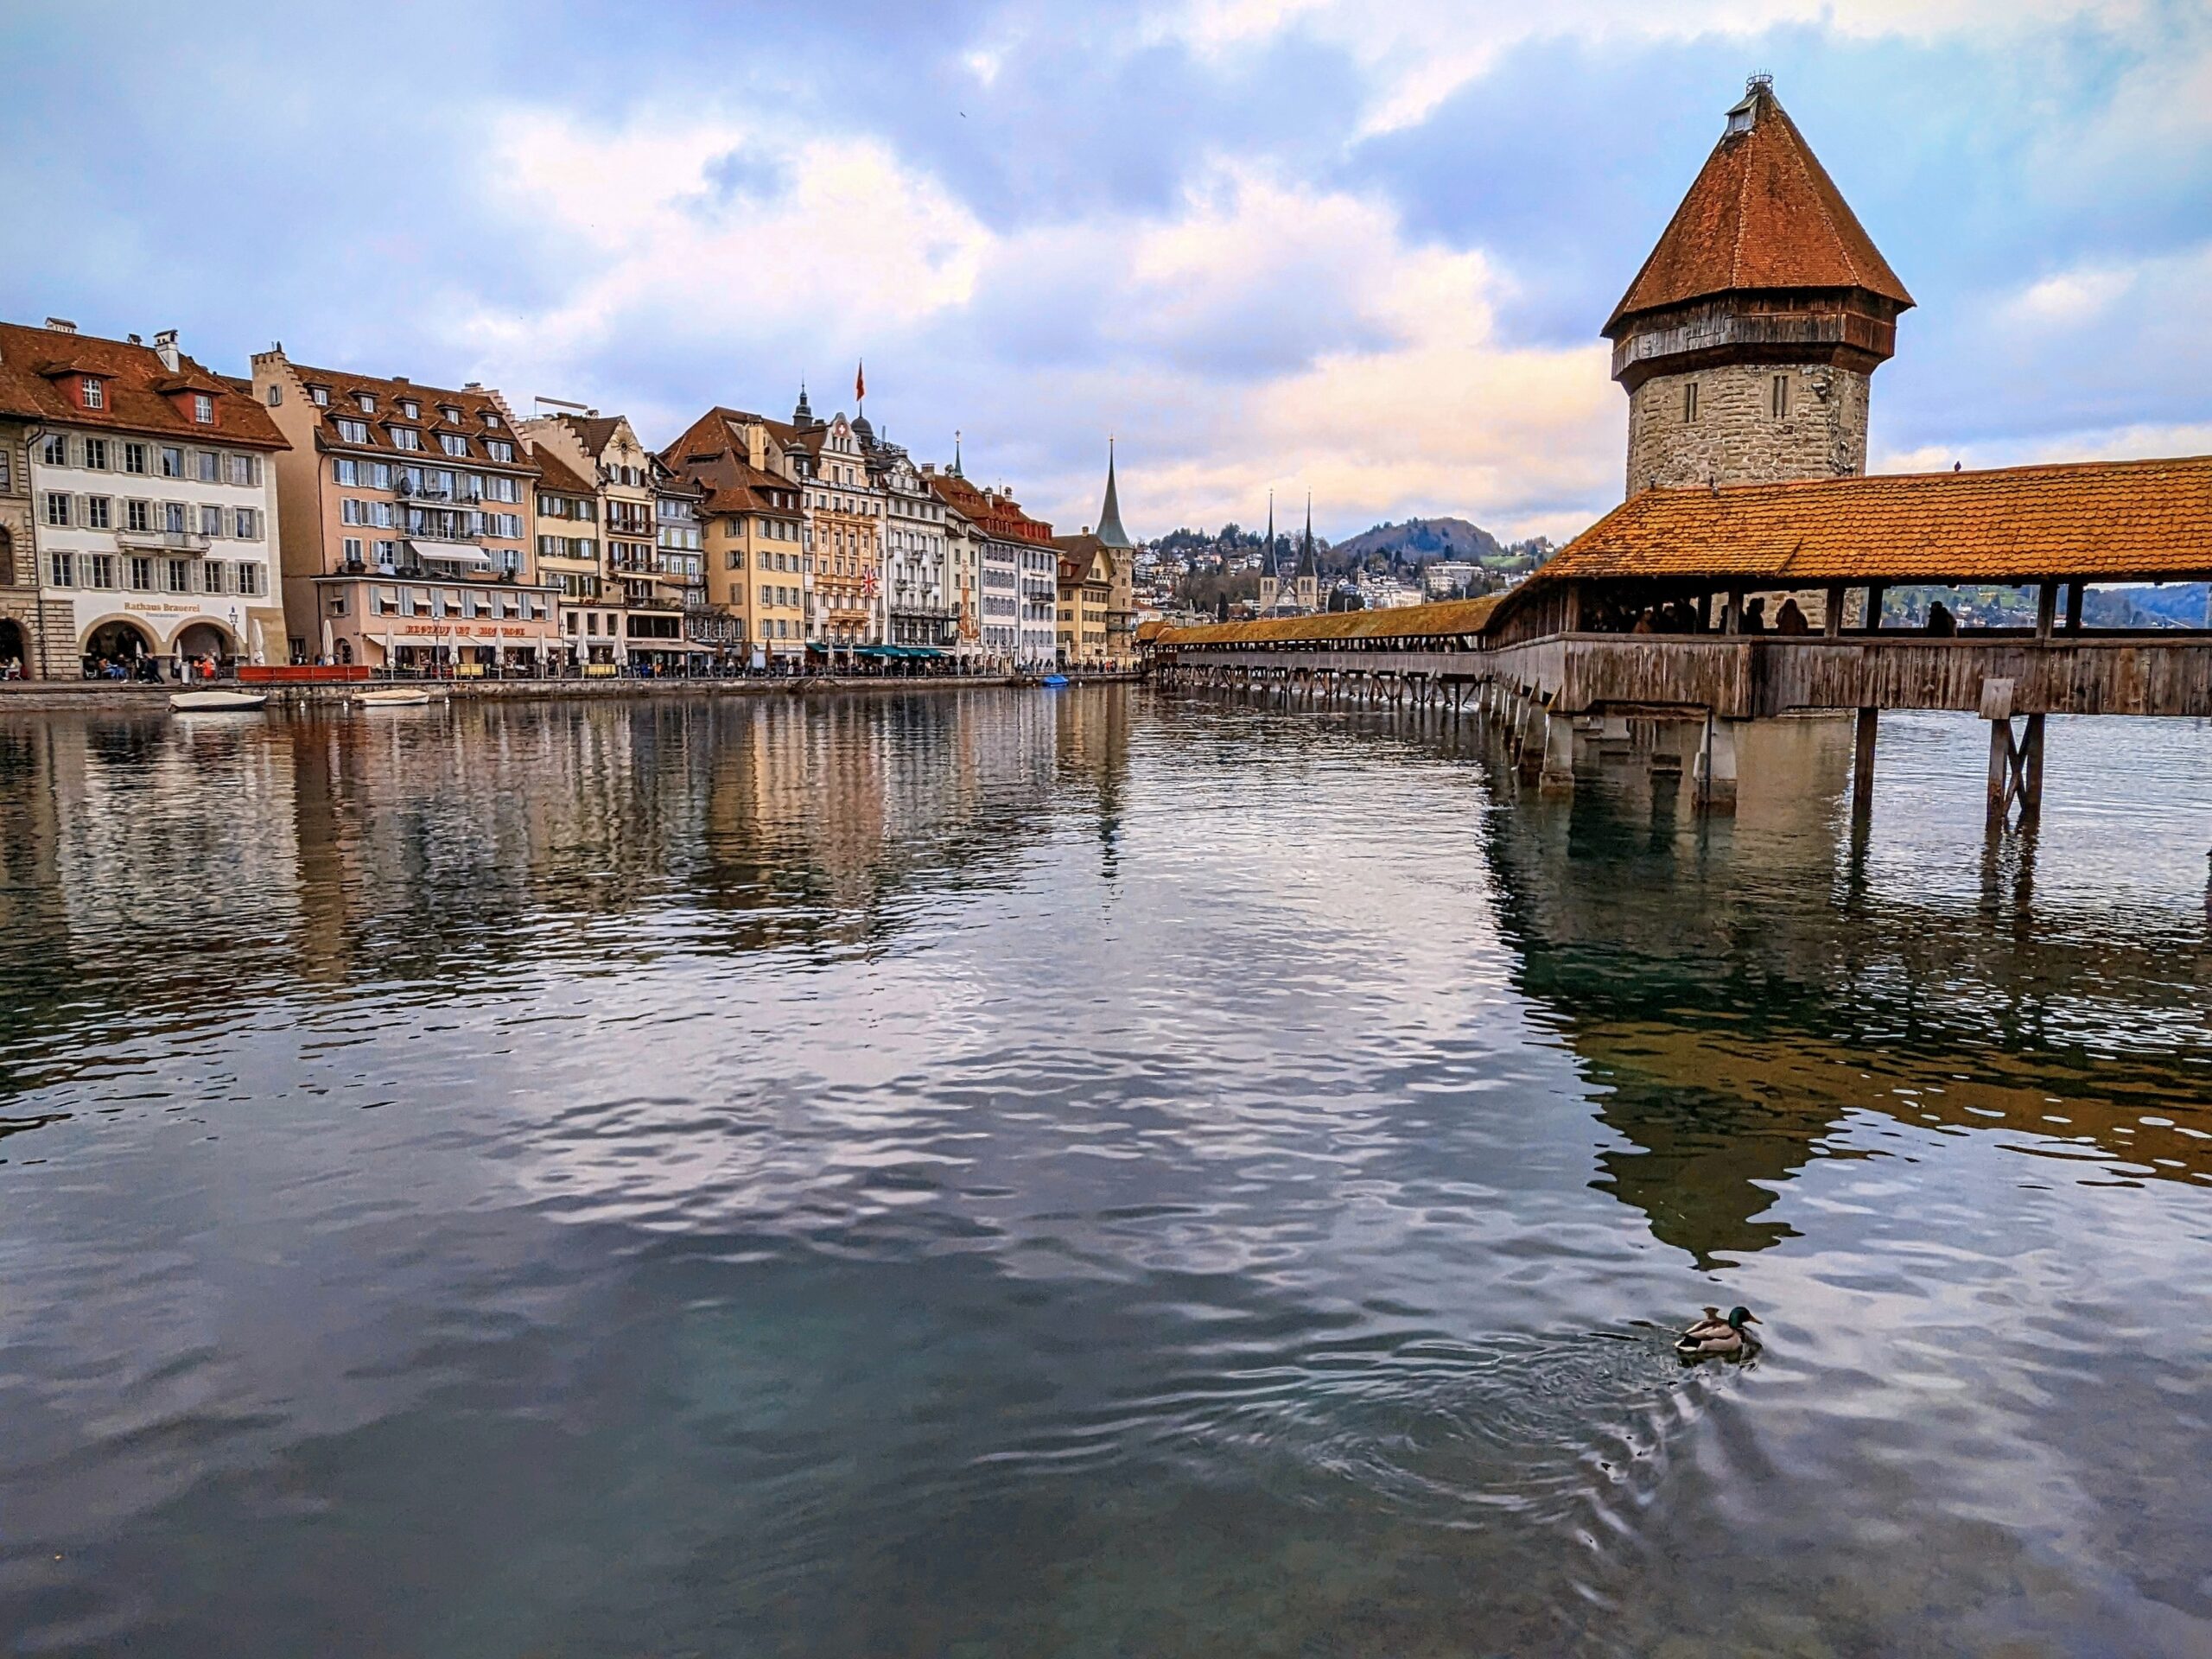 Luzern: Swiss Fairytale City